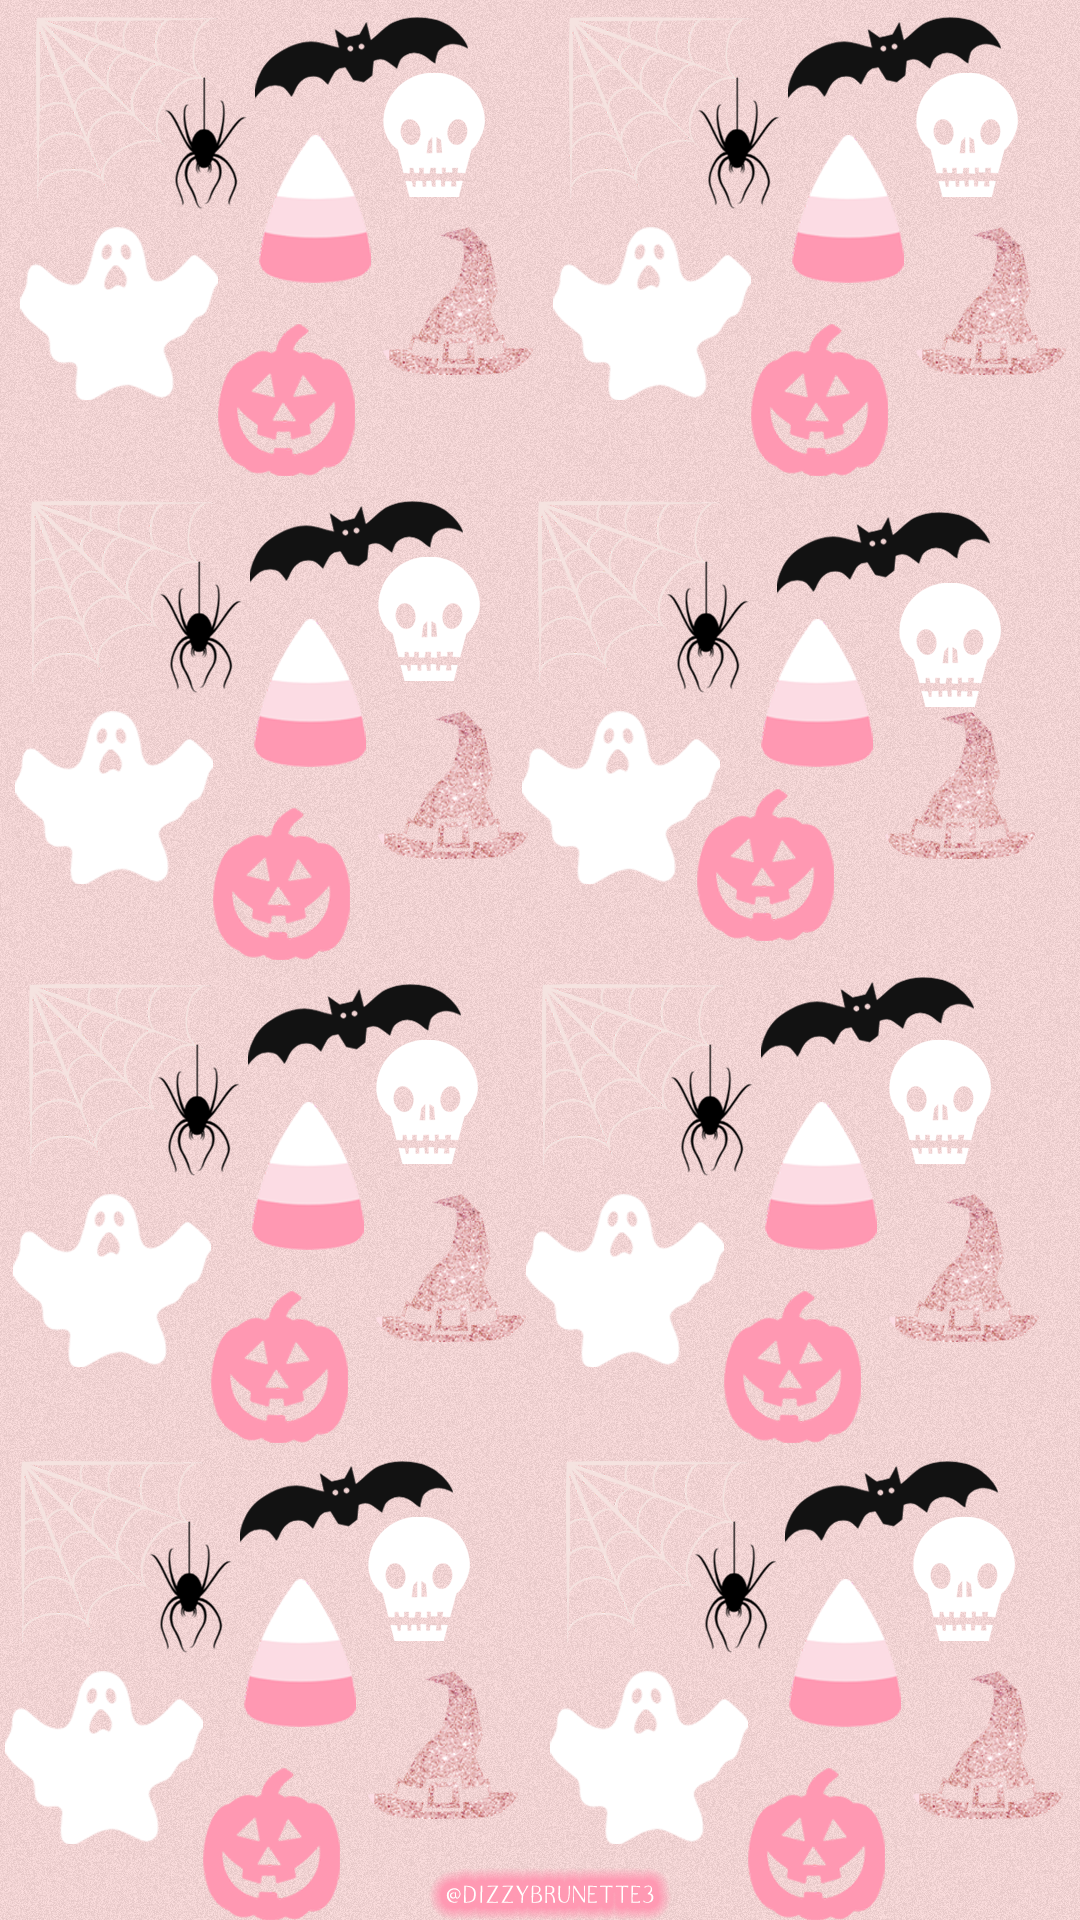 Pink Halloween Images  Free Download on Freepik